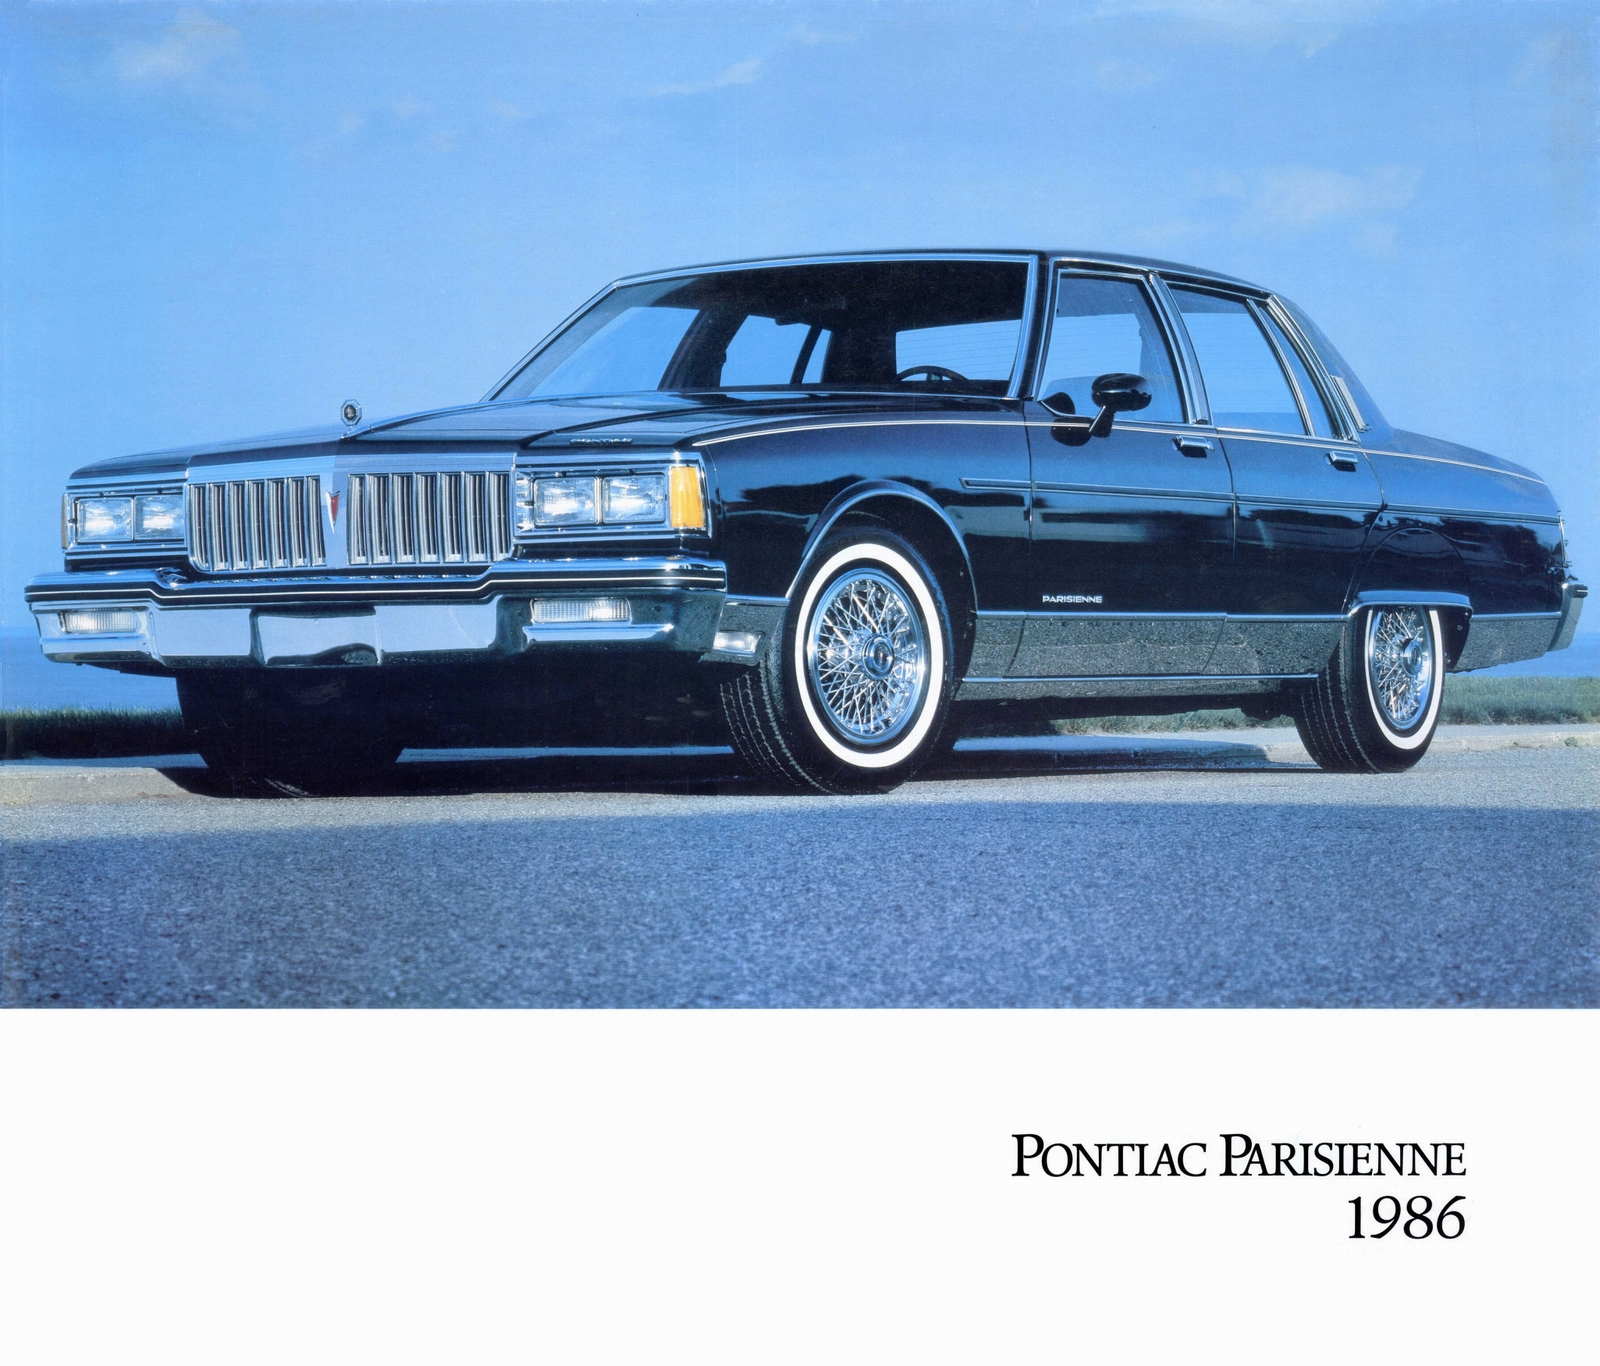 n_1986 Pontiac Showroom Poster-01.jpg